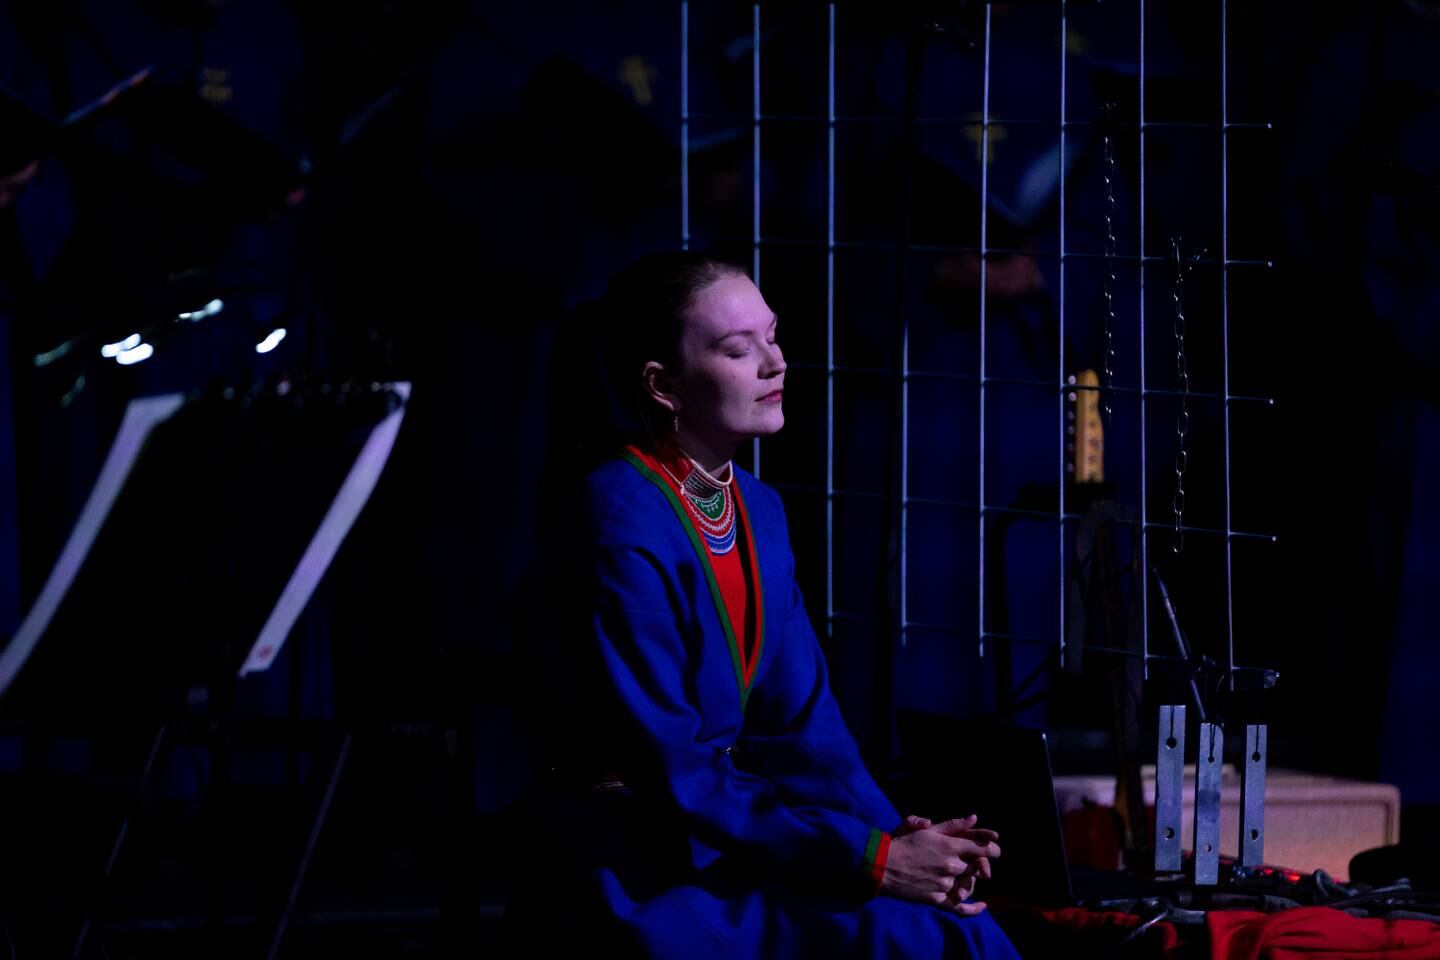 29.07.22, Olavsfest, Trondheim. Kalvskinnsangen en konsert med joikesolistene Marja Mortensson, Niko Valkeapää og Georg Buljo.